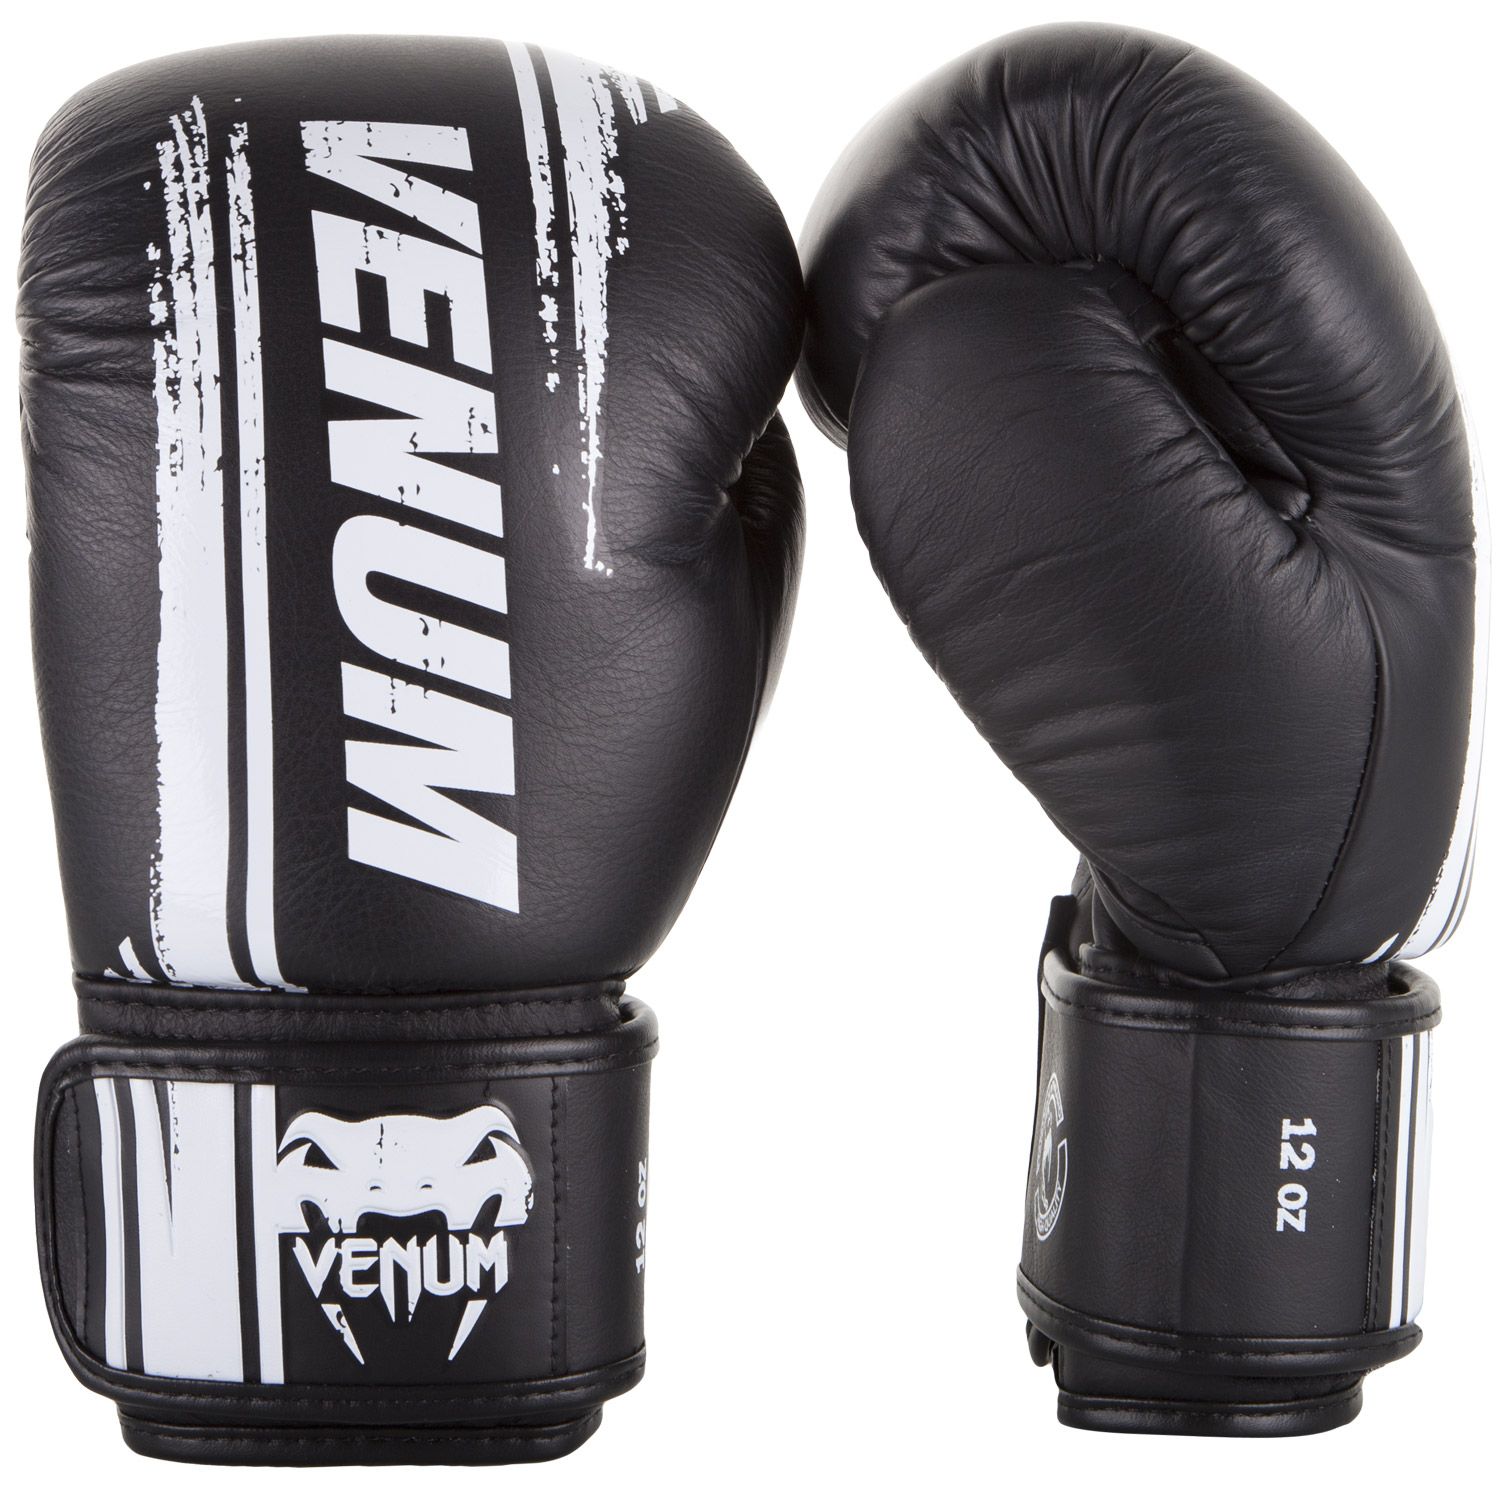 Boxerské rukavice Bangkok Spirit - kůže Nappa černé VENUM vel. 10 oz